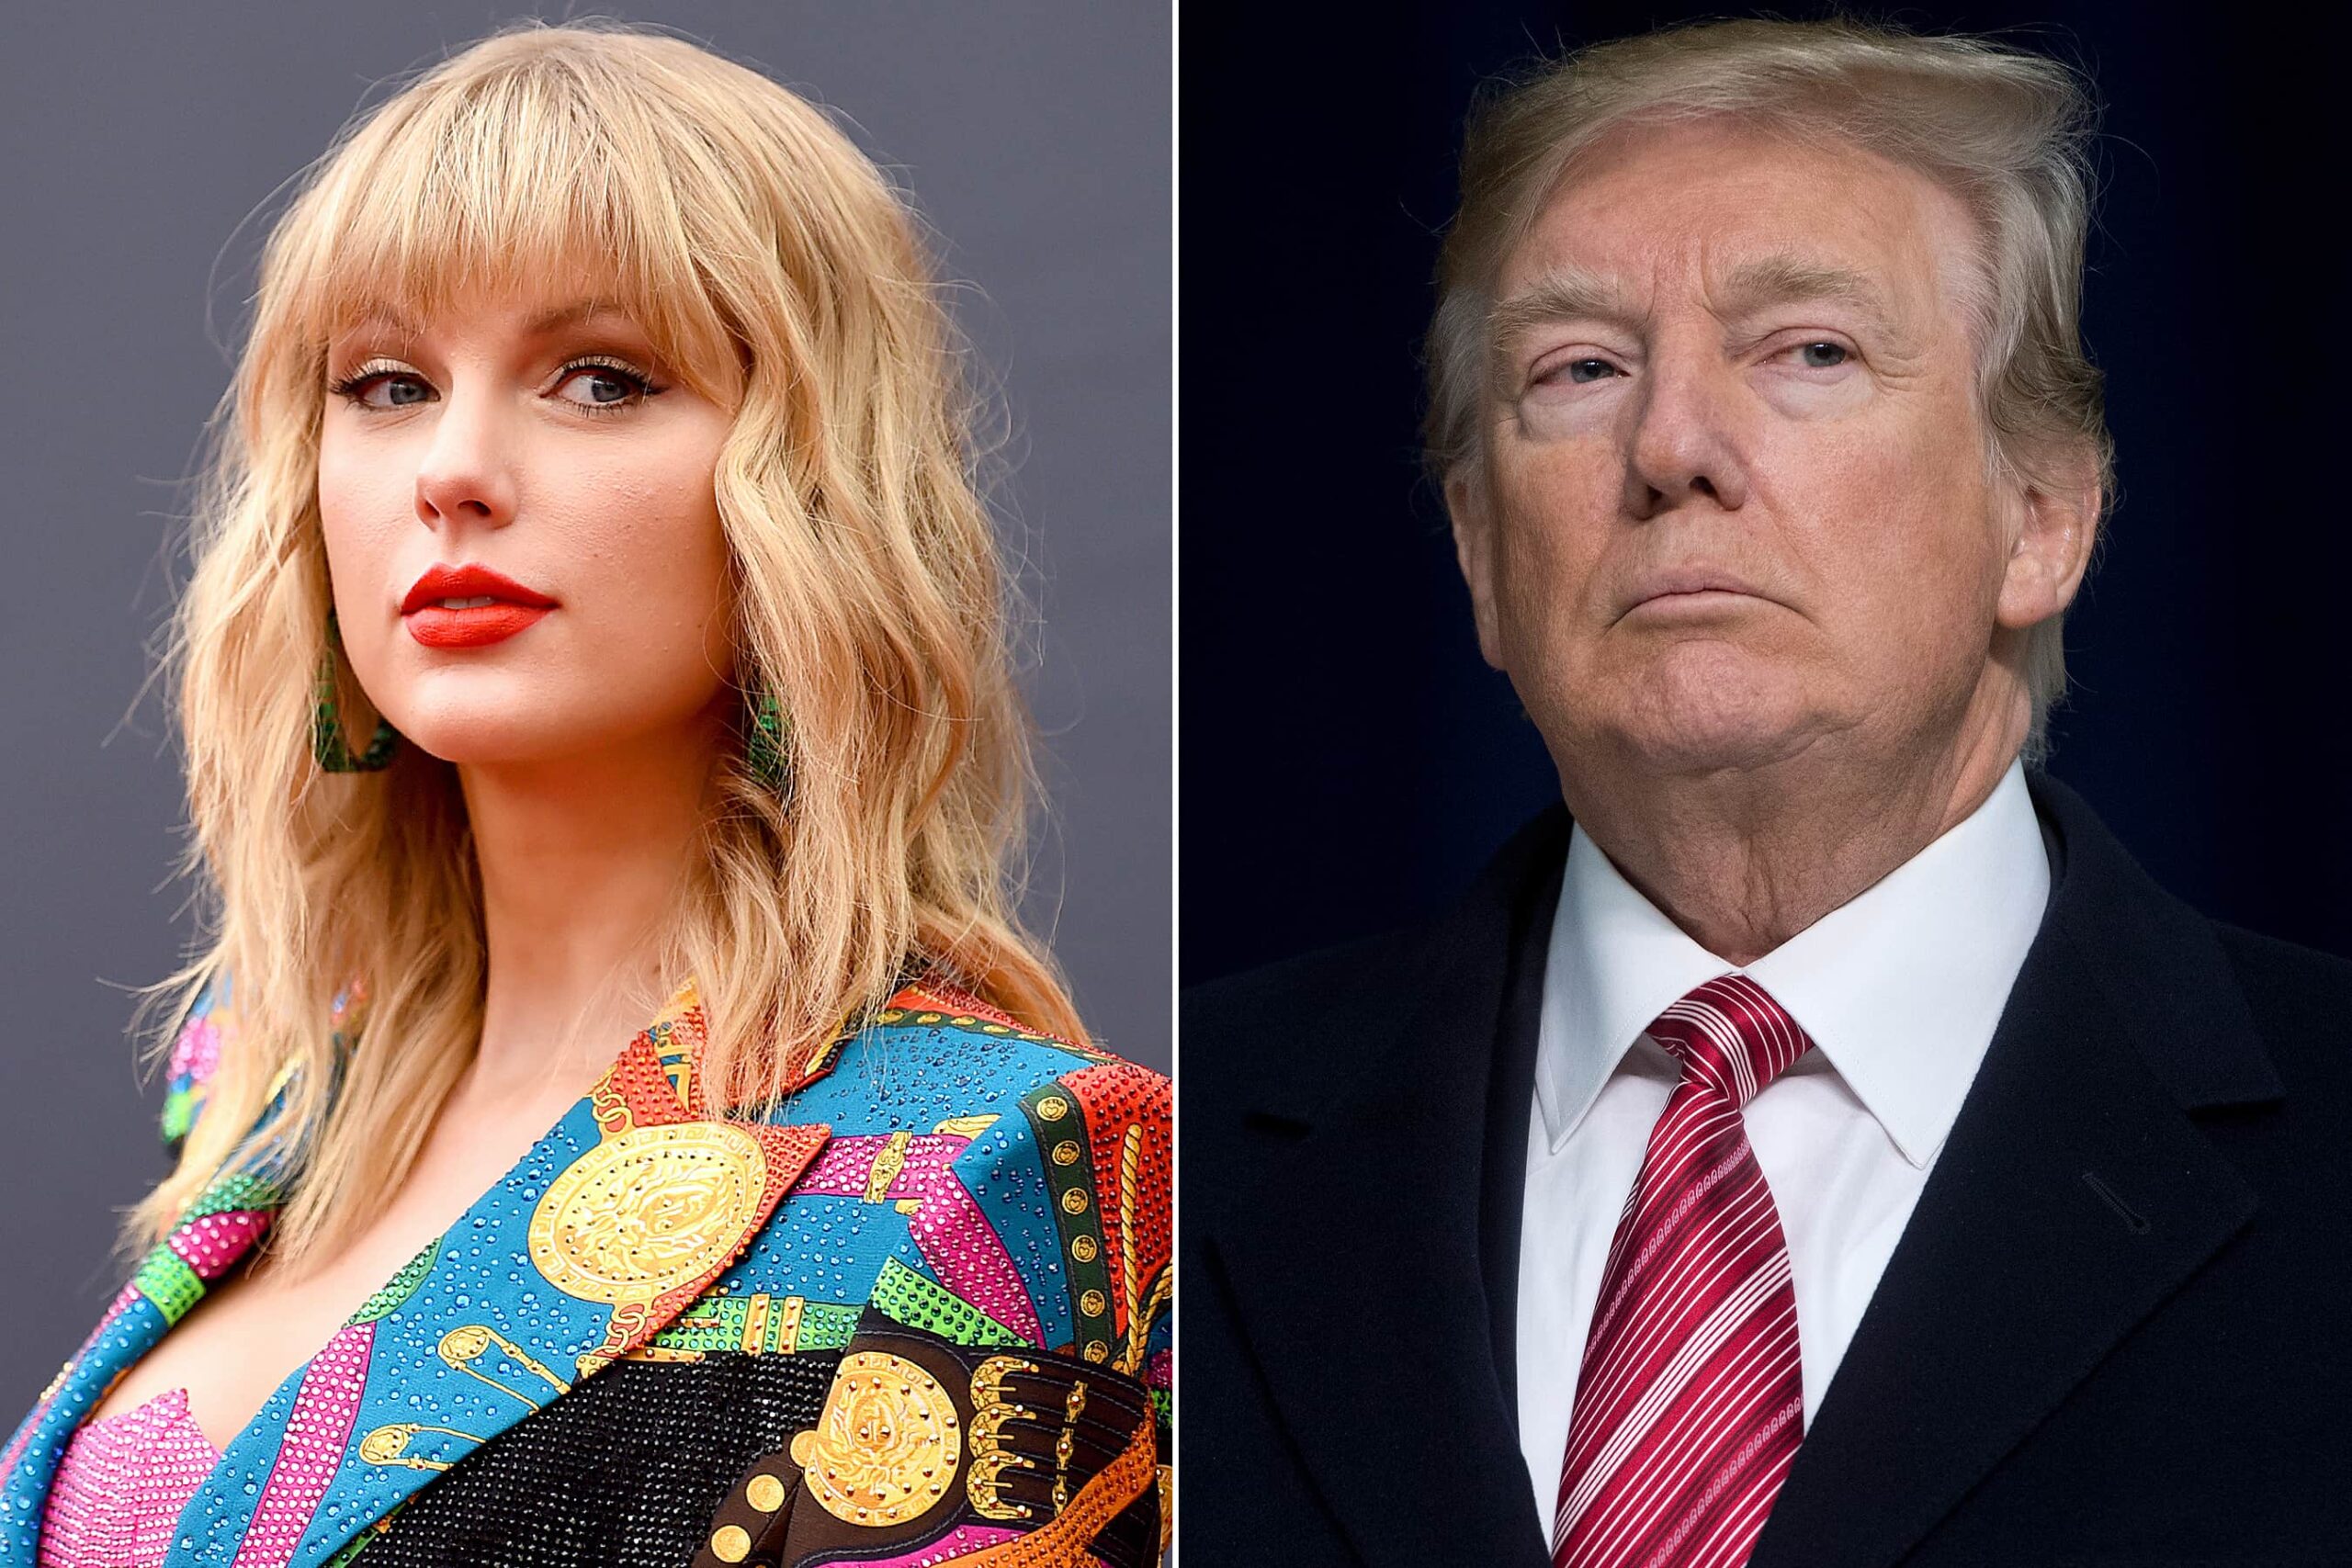 Discursul lui Taylor Swift de la VMA 2019 l-a supărat pe Donald Trump. Uite ce a declarat acesta!